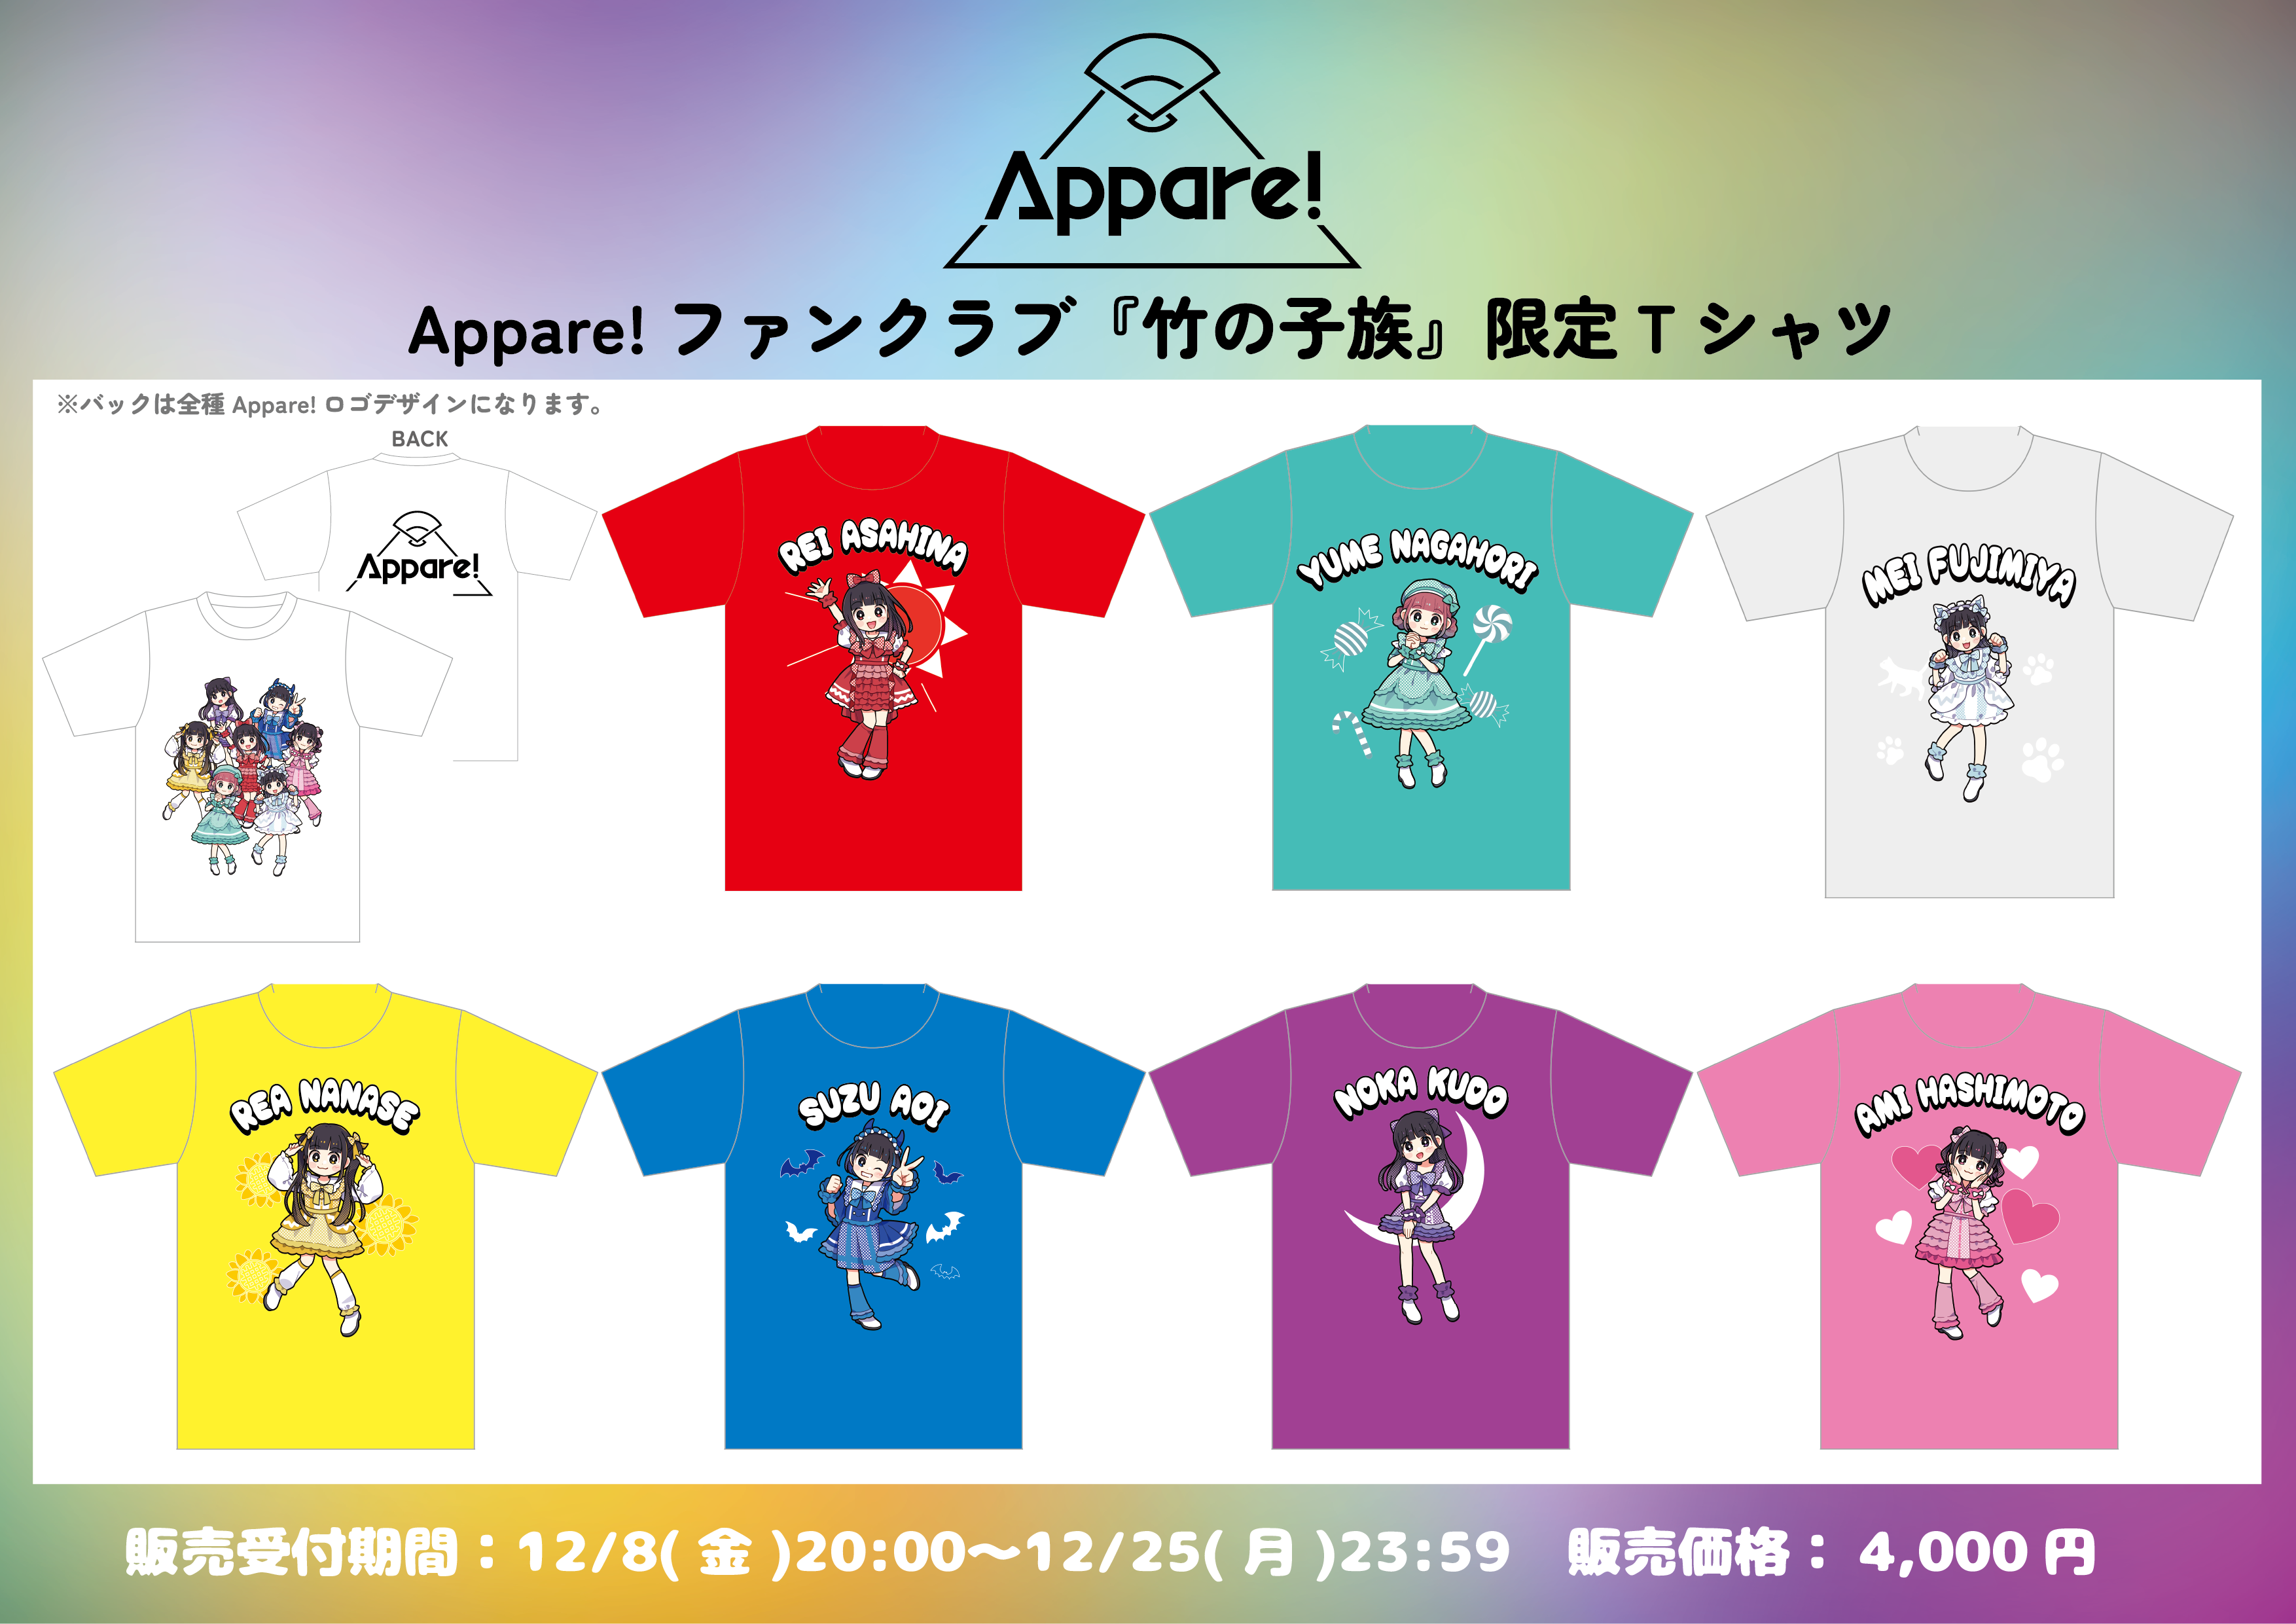 【FC限定】Appare! ファンクラブ『竹の子族』限定Tシャツ